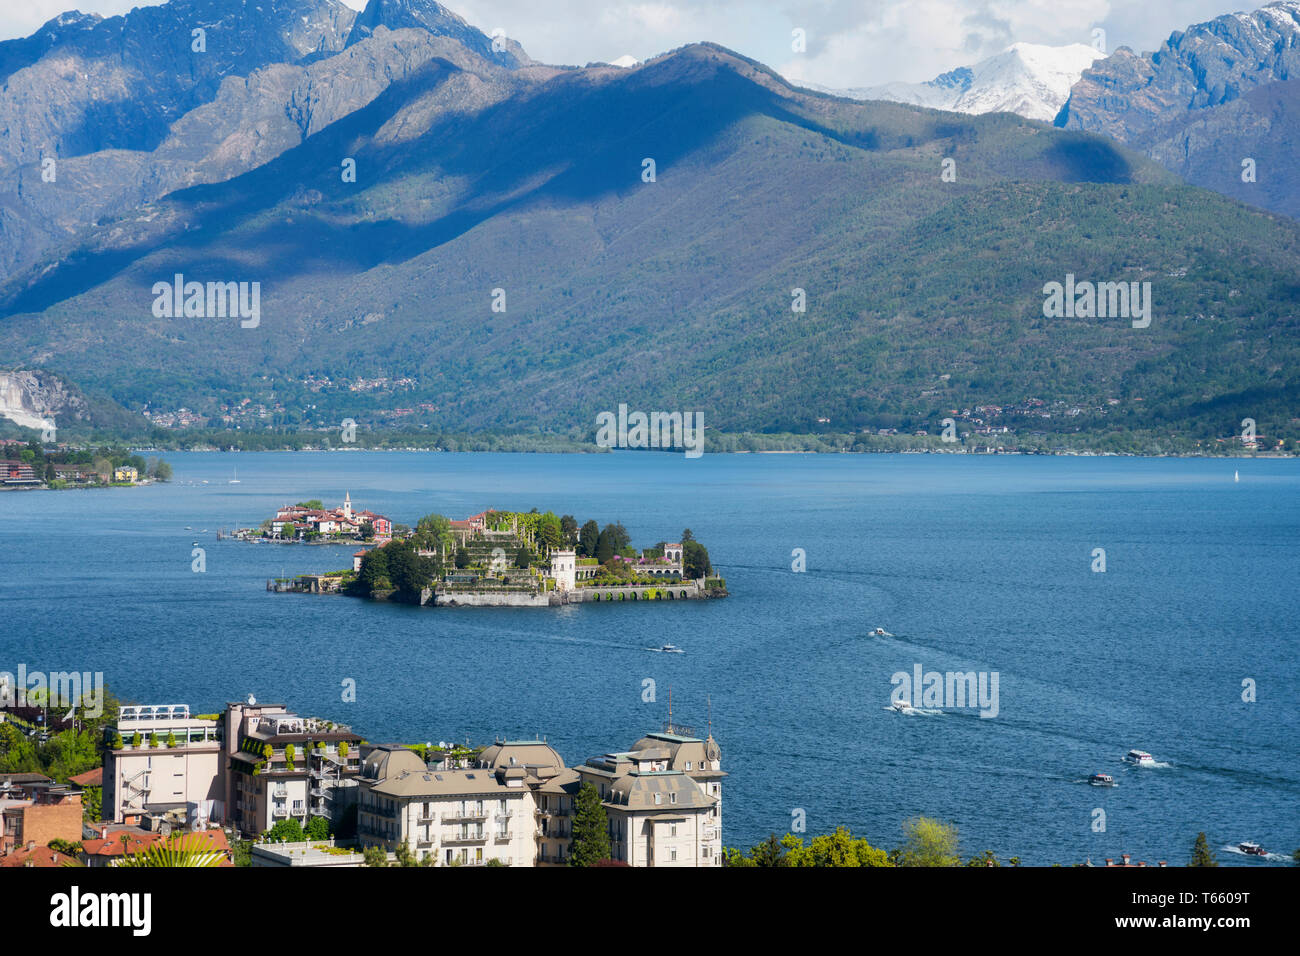 Isola Bella and Isola dei Pescatori, the famous Islands on Lago Maggiore lake. Stresa, Italy Stock Photo